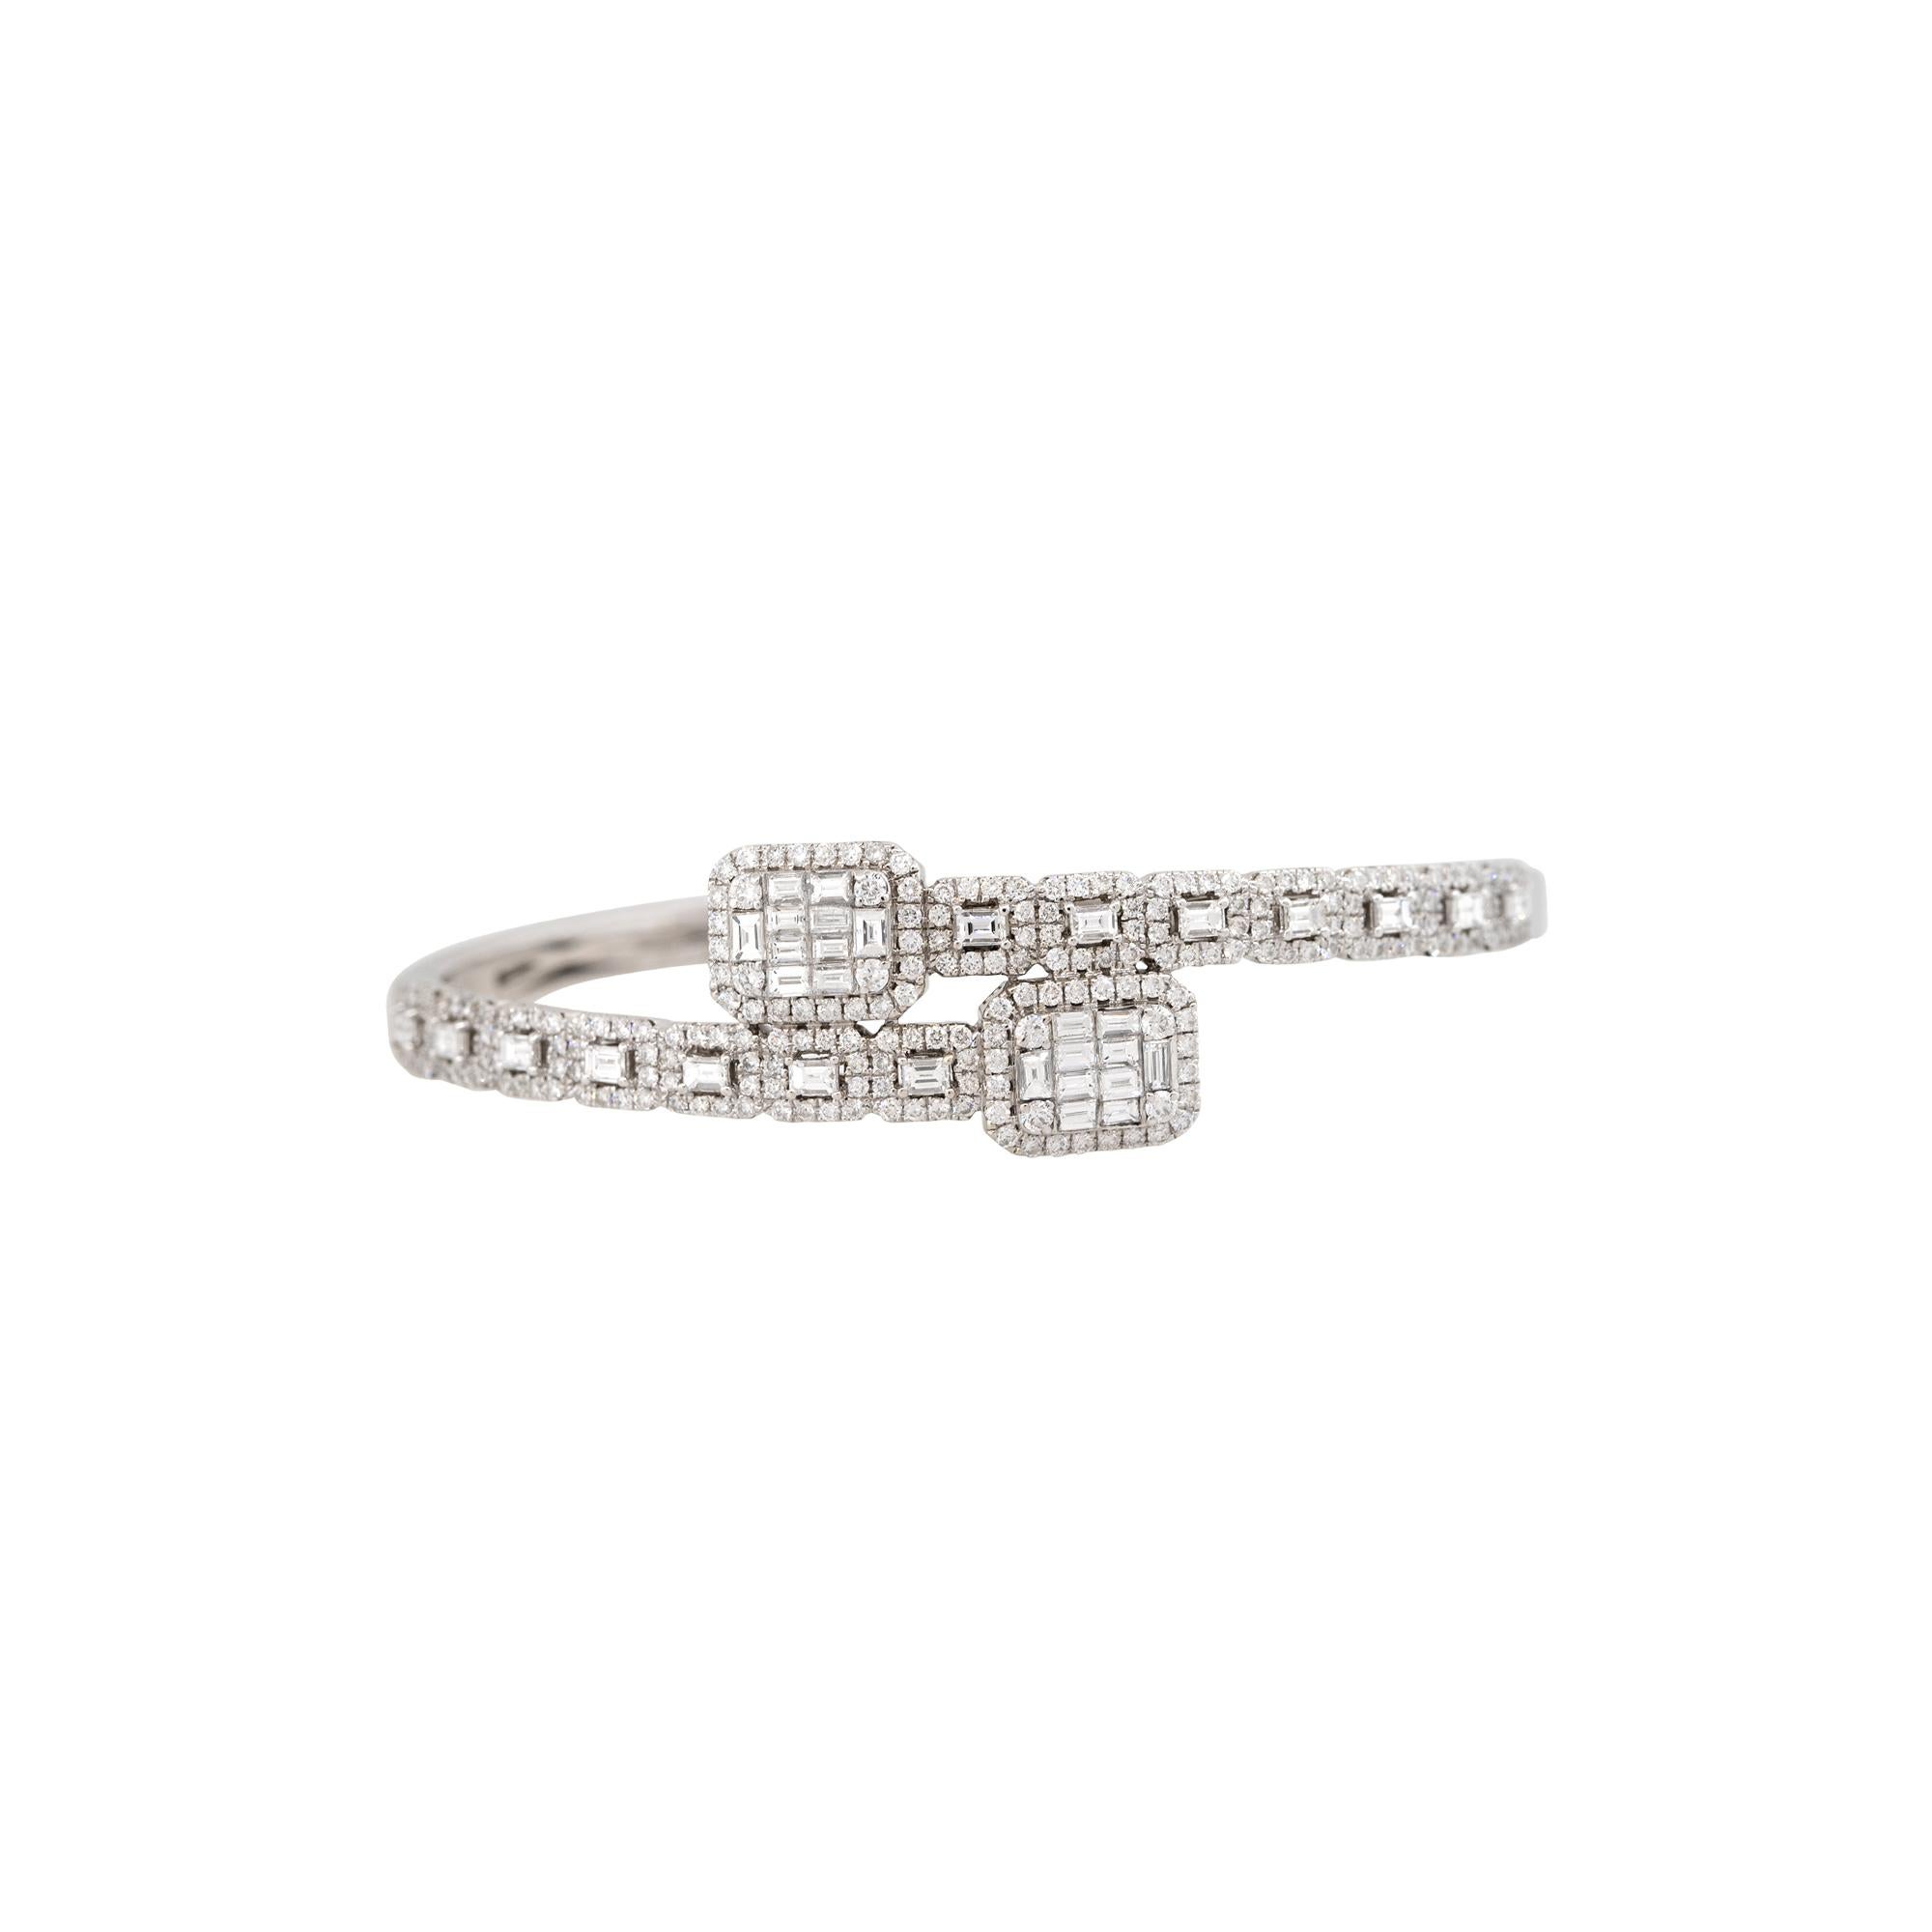 Tout le monde devrait s'intéresser à ce bracelet manchette à pont de diamants ! Avec environ 4,05 carats de diamants ronds de taille brillant, baguette et émeraude, ce bracelet offre un look cool et tendance. Non seulement il y a plusieurs tailles